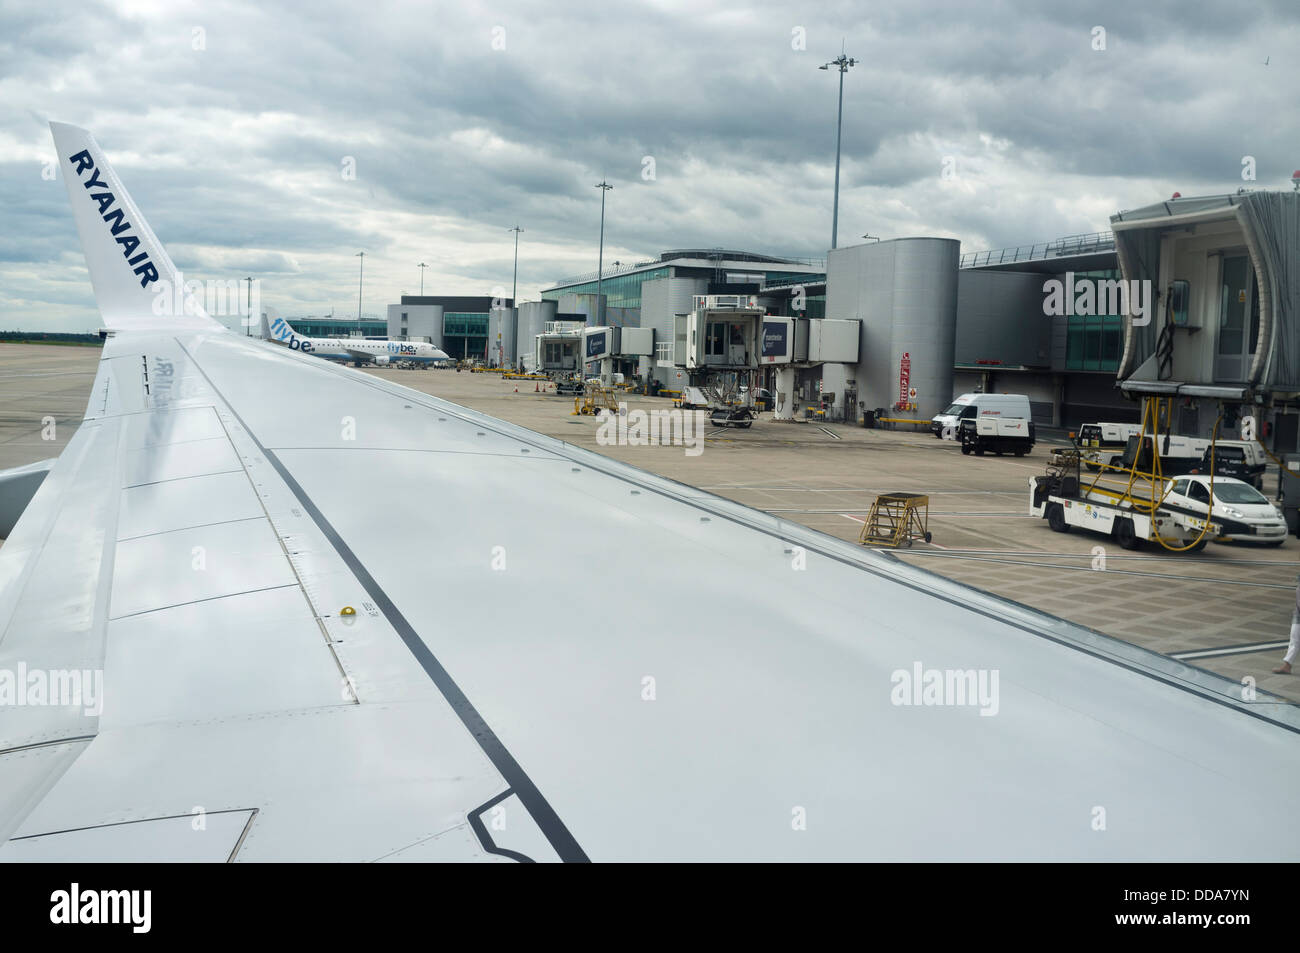 L'aéroport de Manchester vue depuis l'intérieur de la cabine d'un avion stationné, England, UK. Banque D'Images